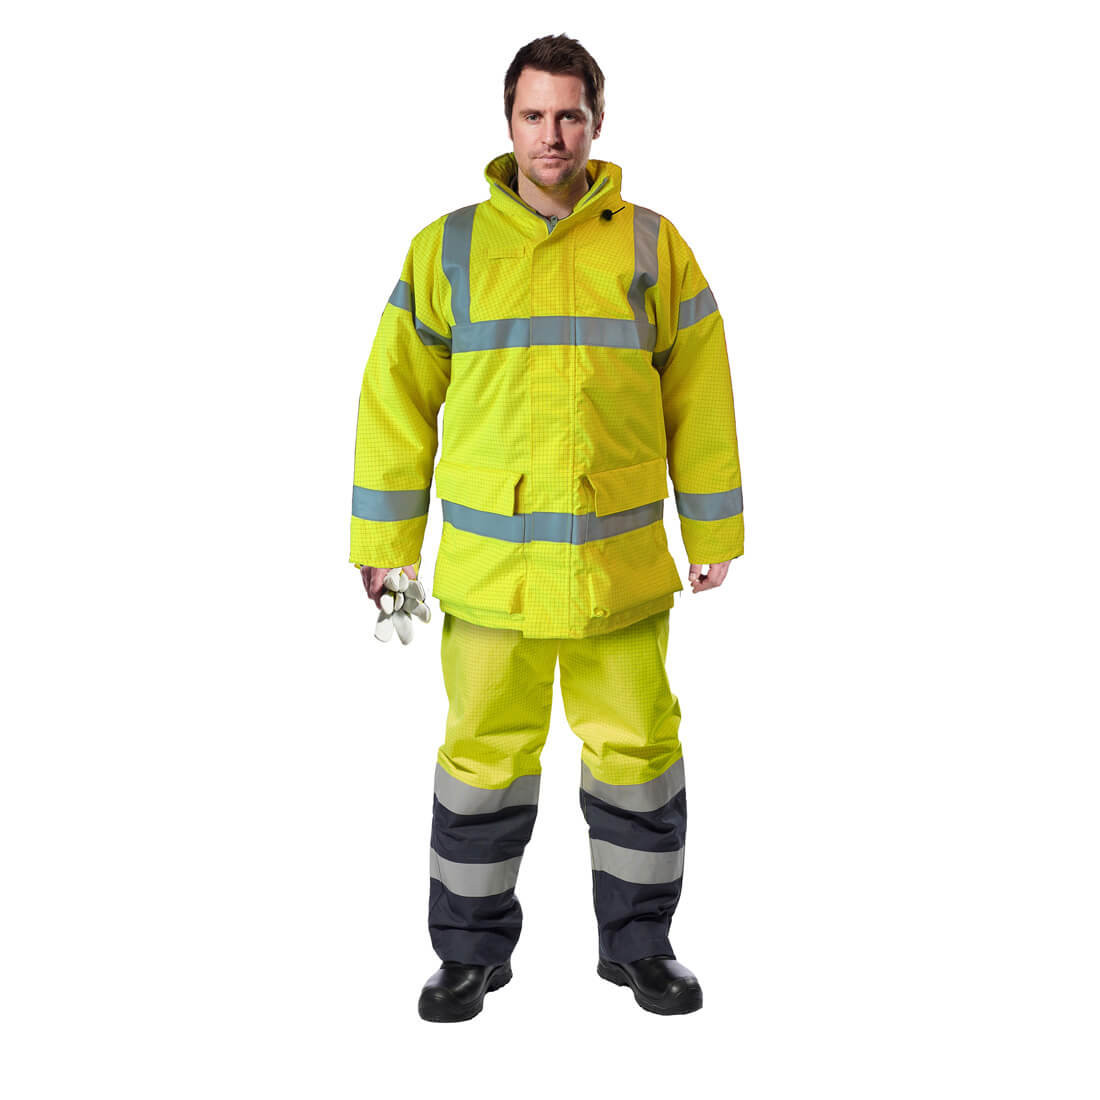 Pantaloni Bizflame™ Rain HiVis, Protectie Multipla - Imbracaminte de protectie